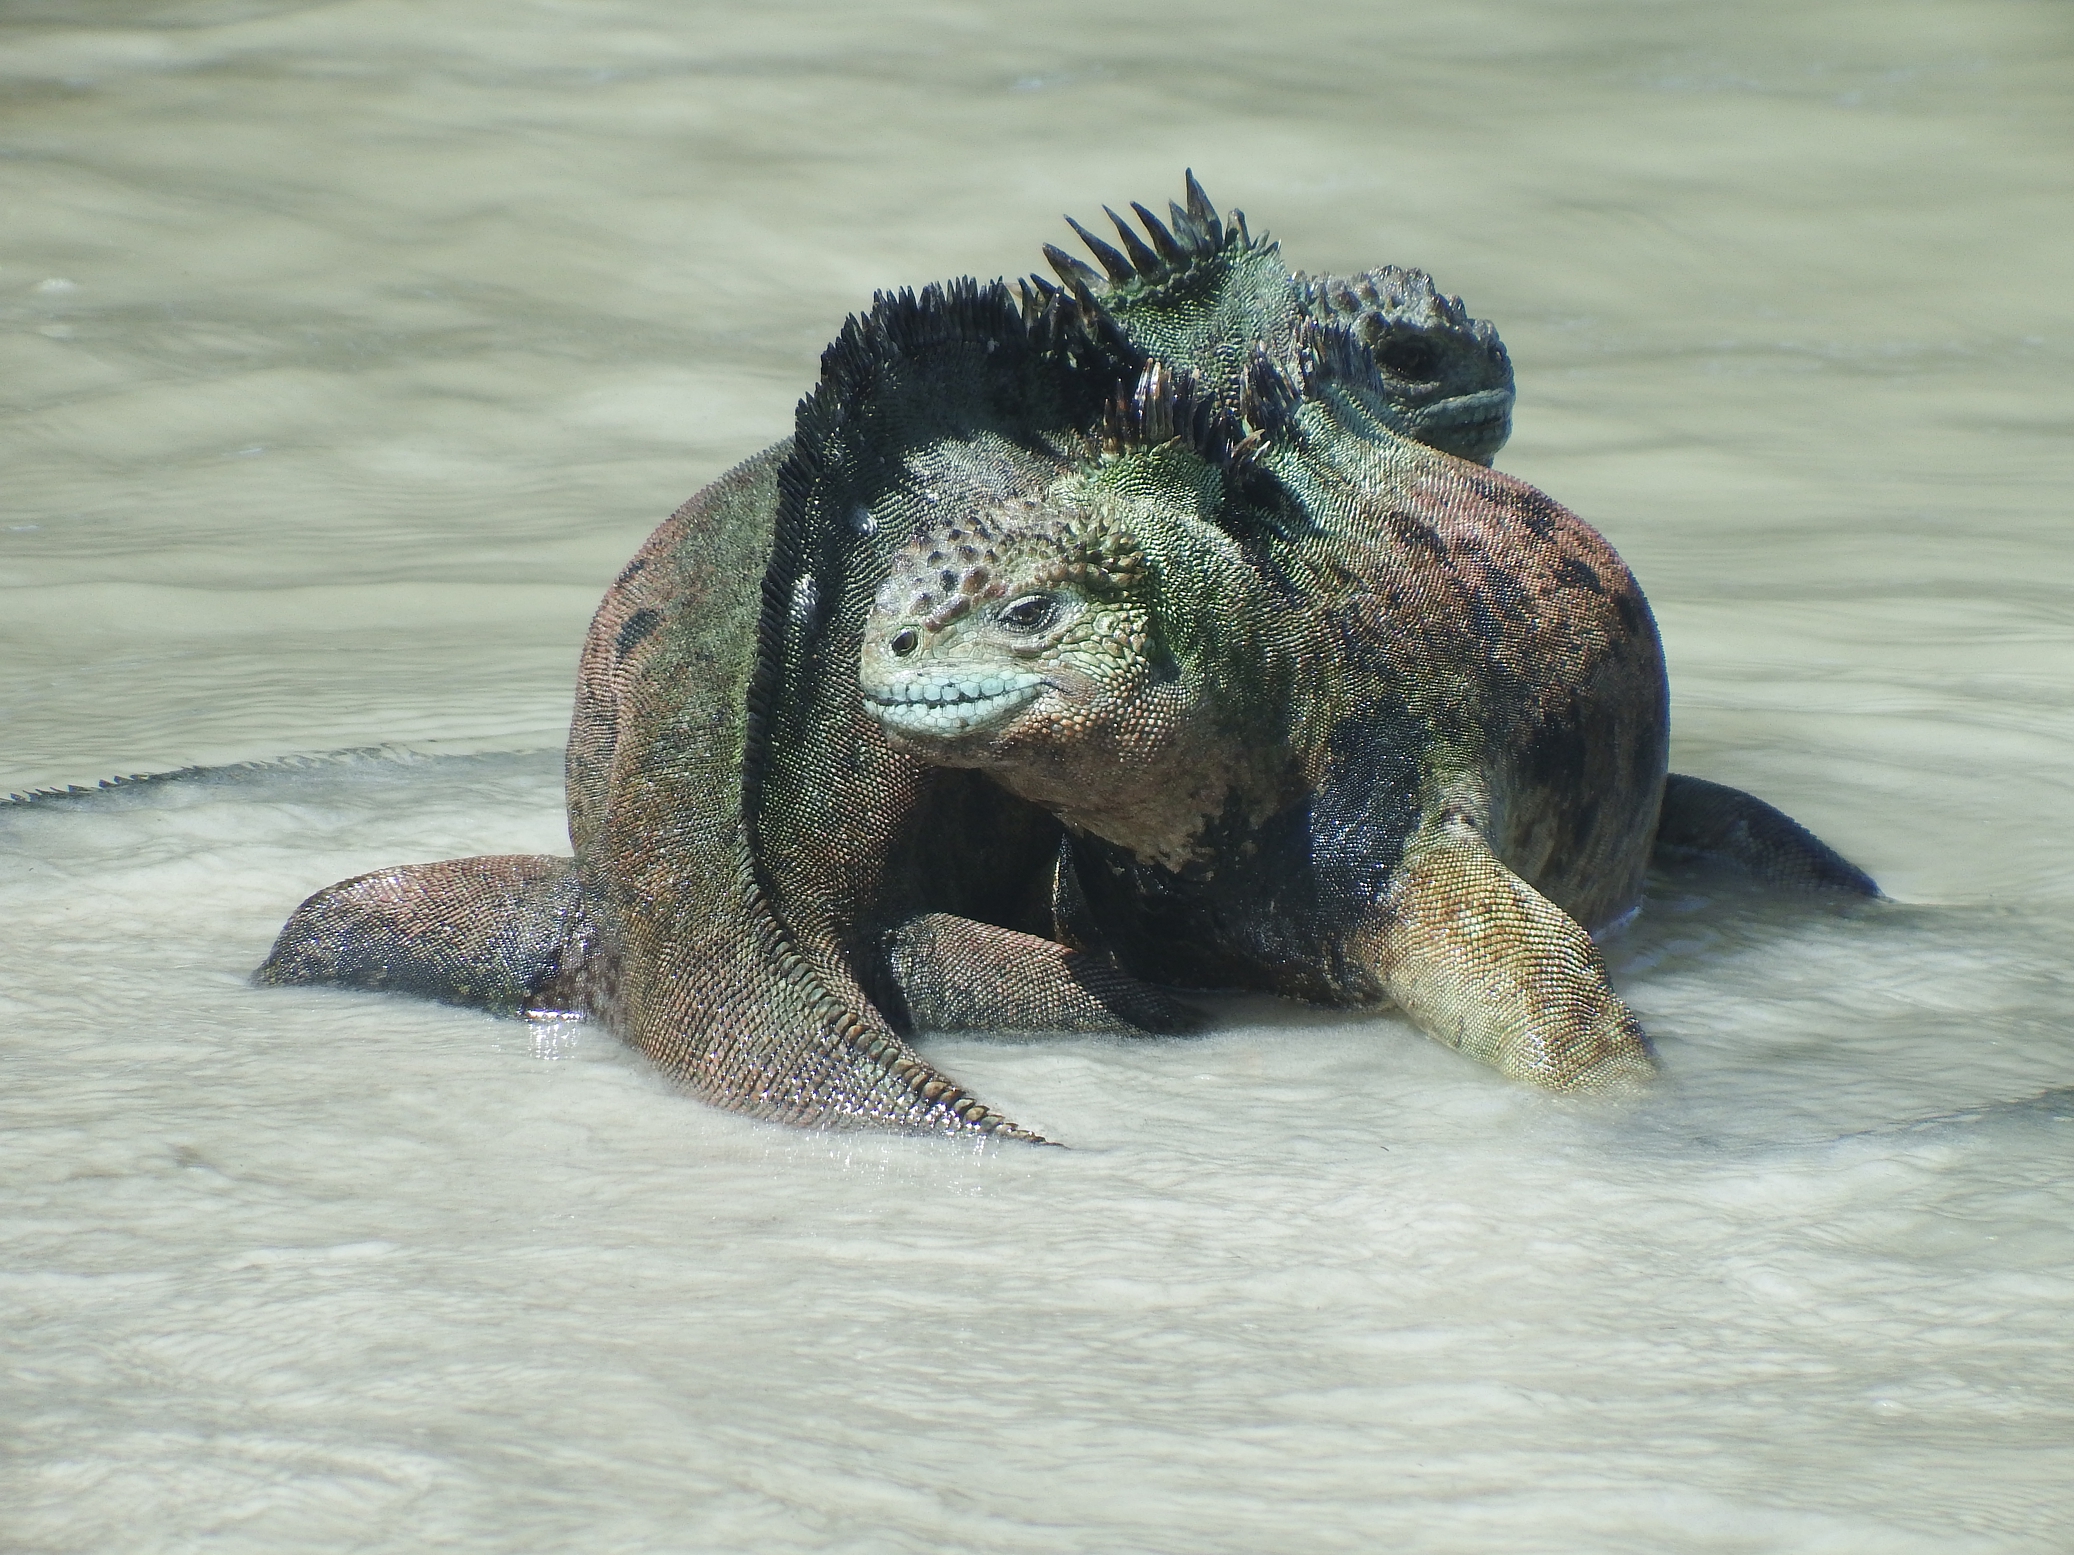 Galápagos marine iguanas